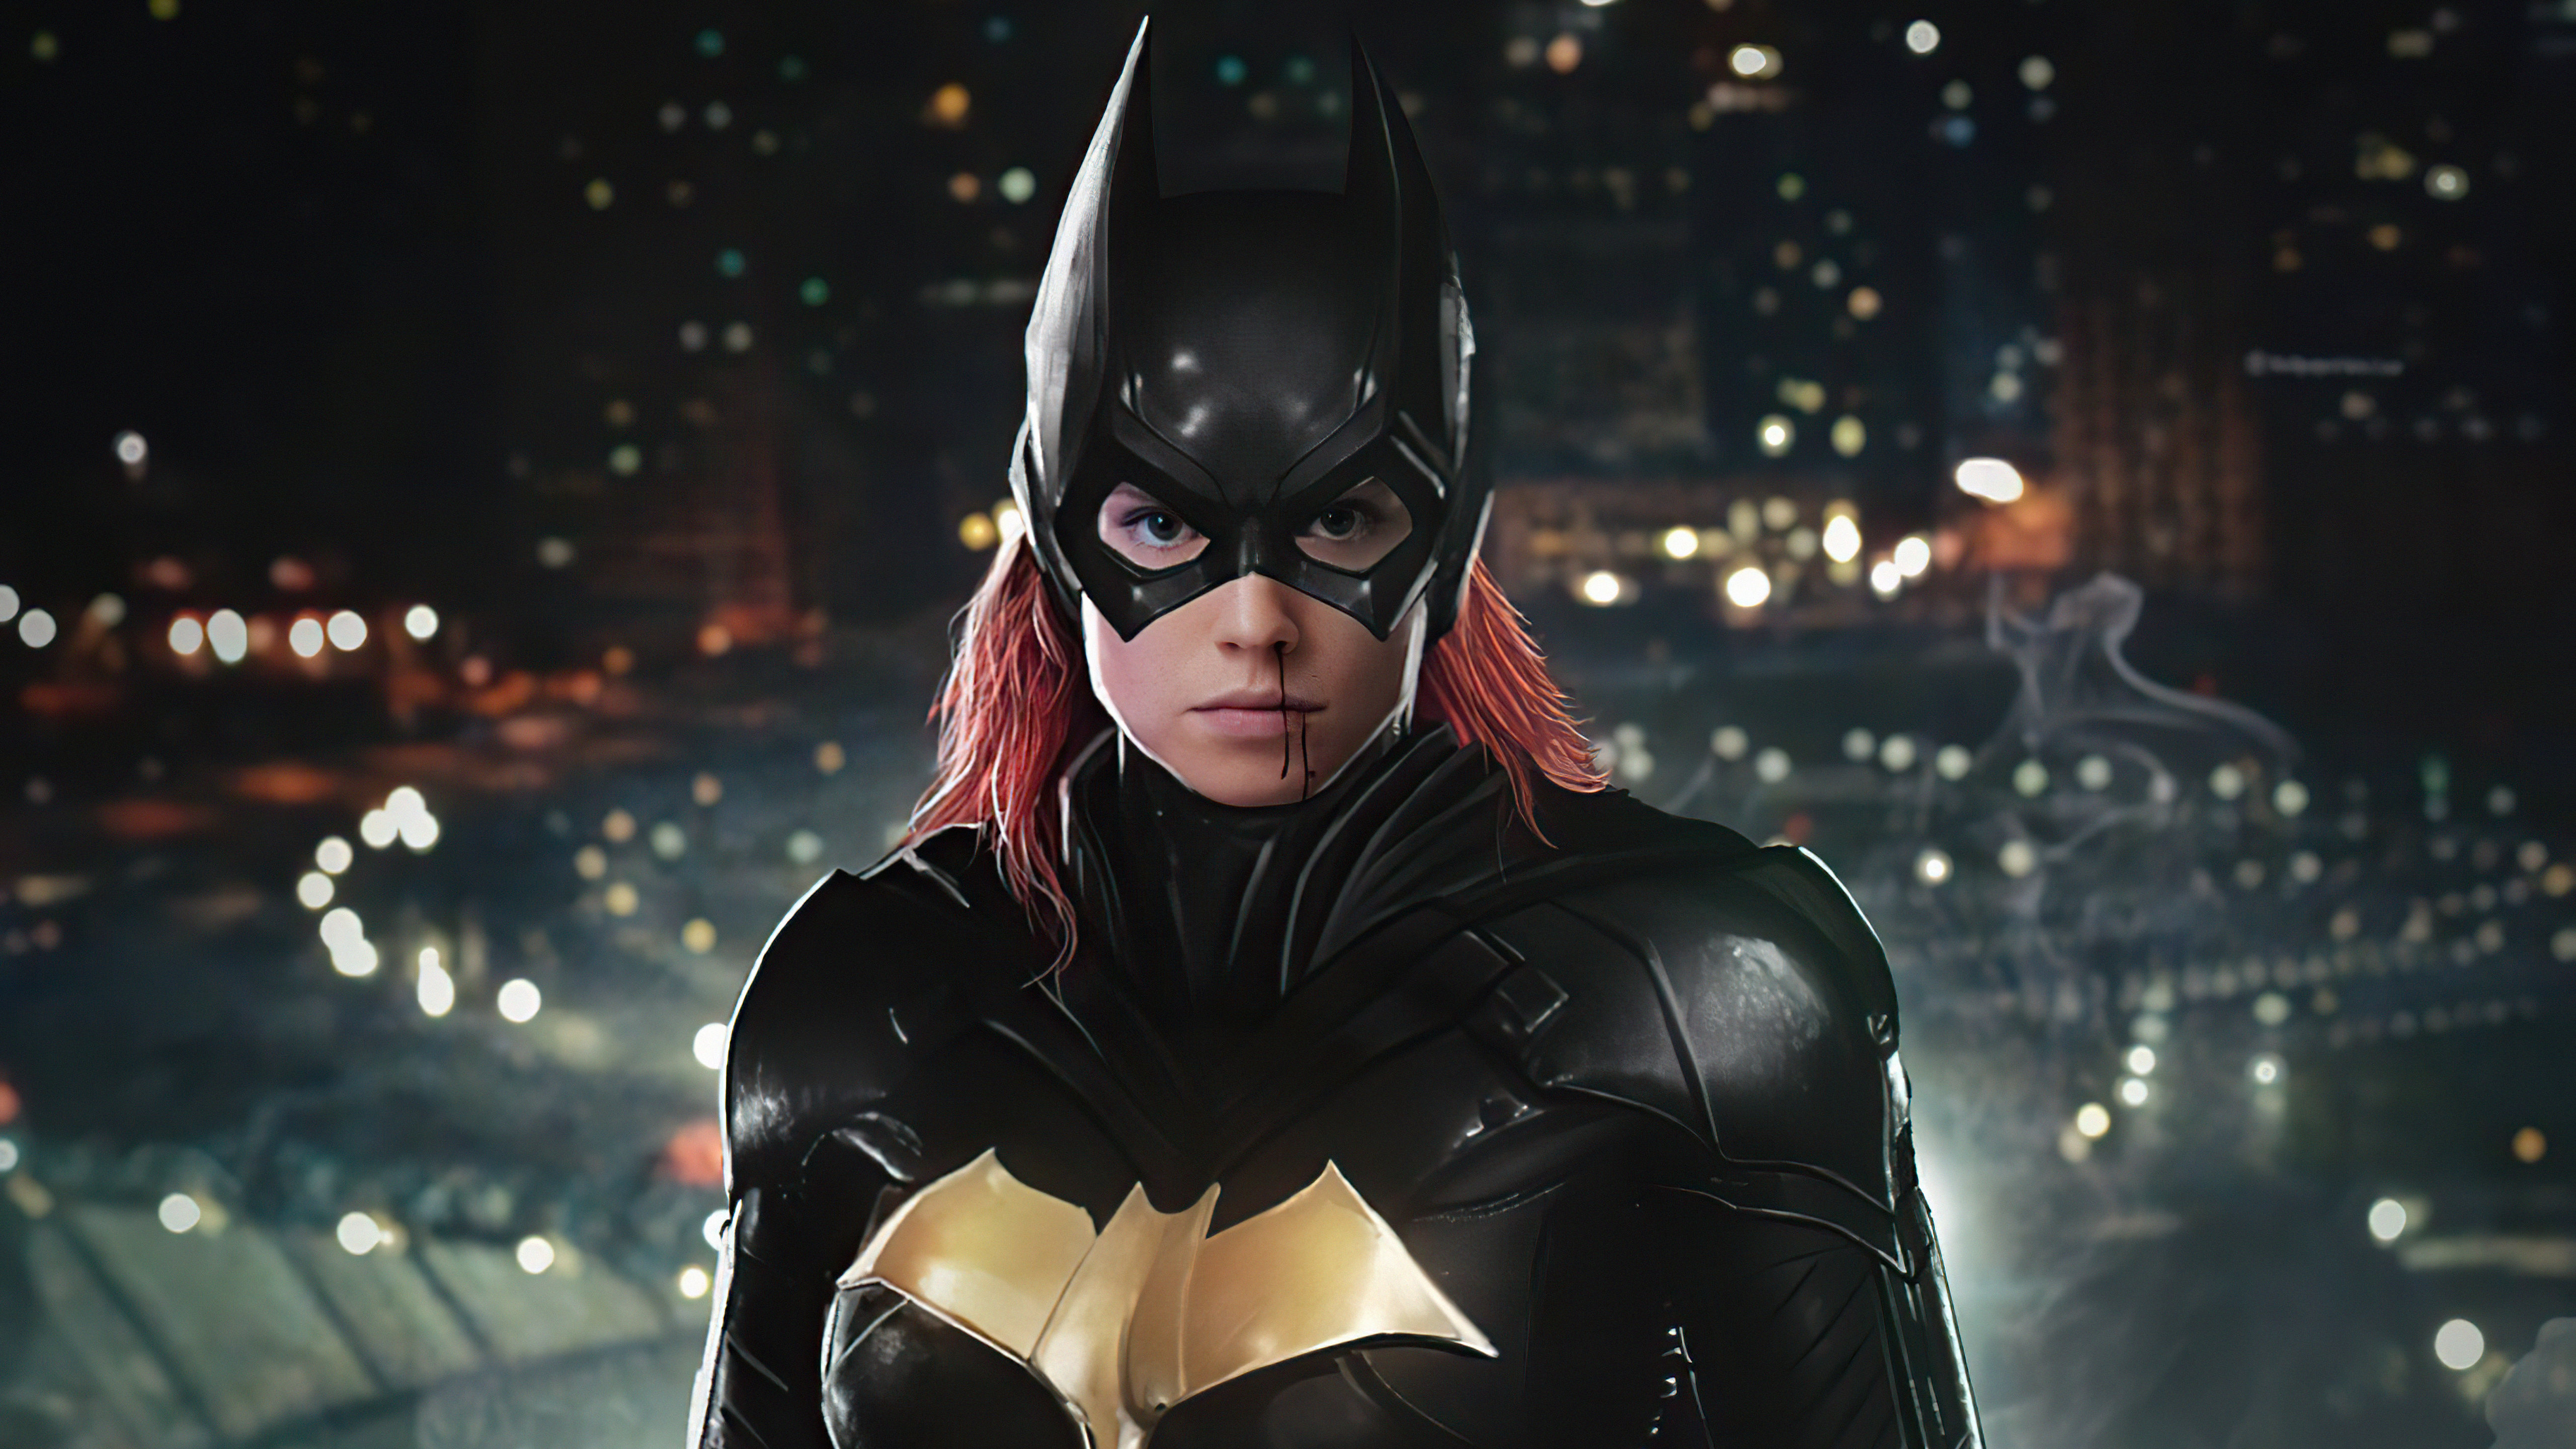 Descarga gratuita de fondo de pantalla para móvil de Historietas, The Batman, Dc Comics, Batgirl.